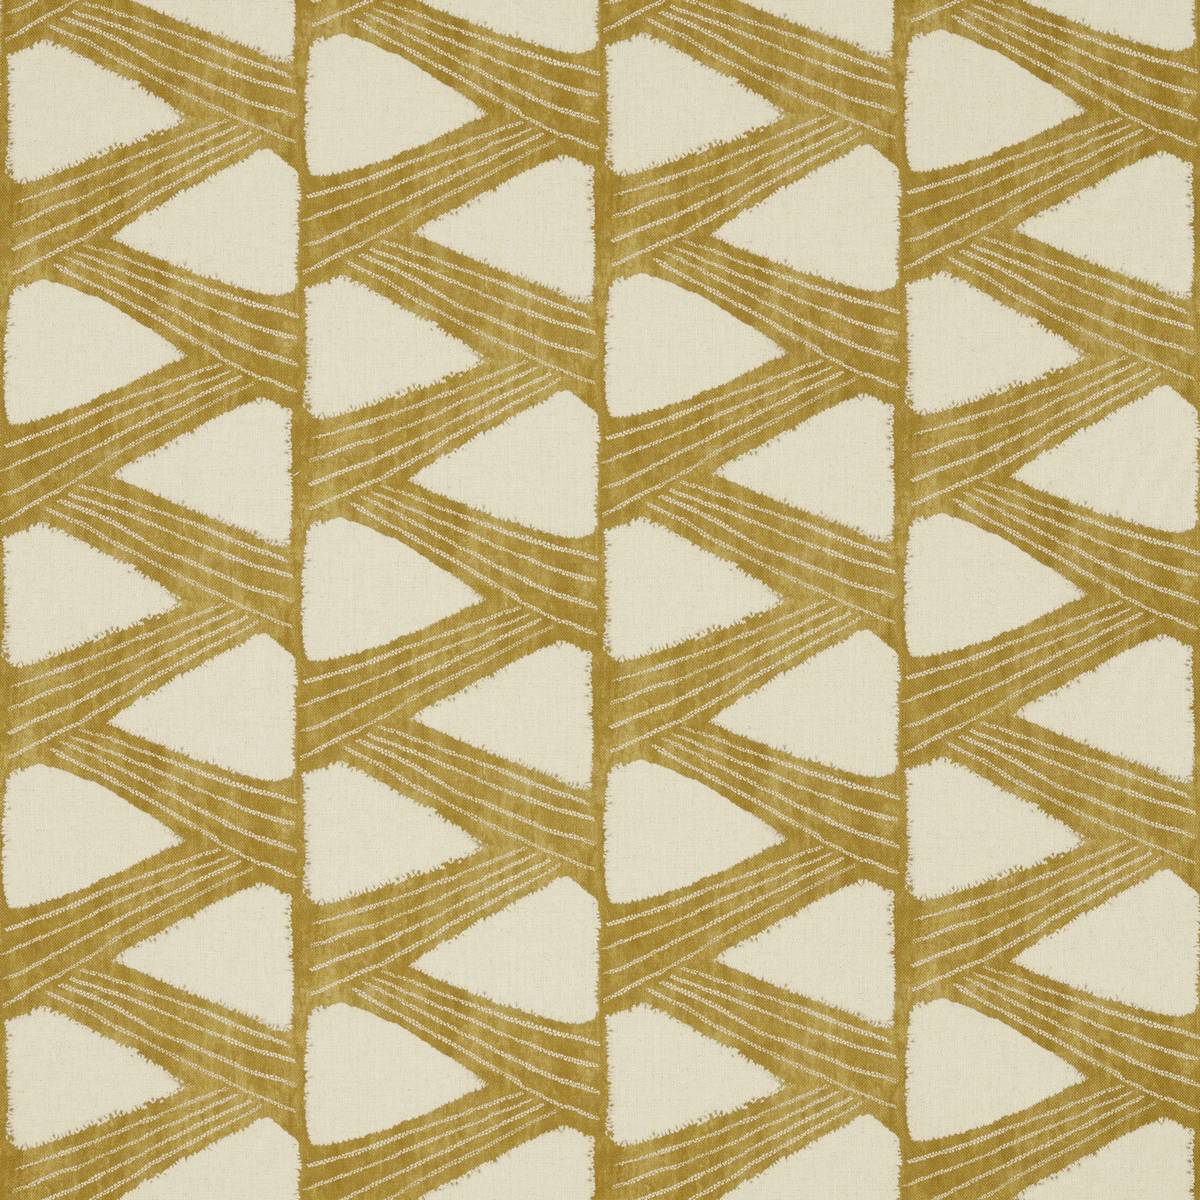 Kanoko Gold Fabric by Zoffany